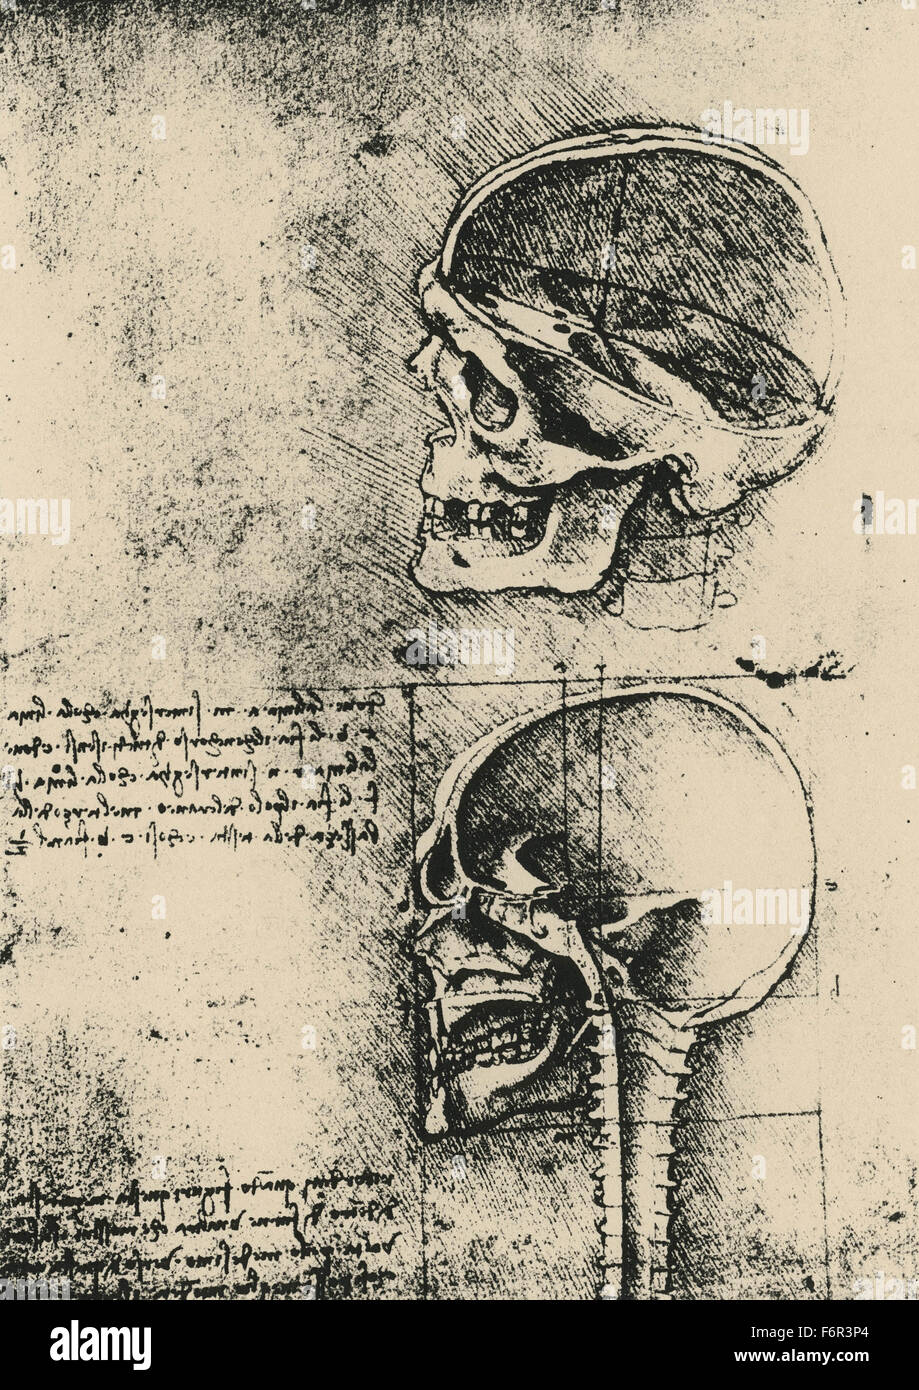 Leonardo da Vinci - Drawing of a skull in profile with cranium removed Stock Photo